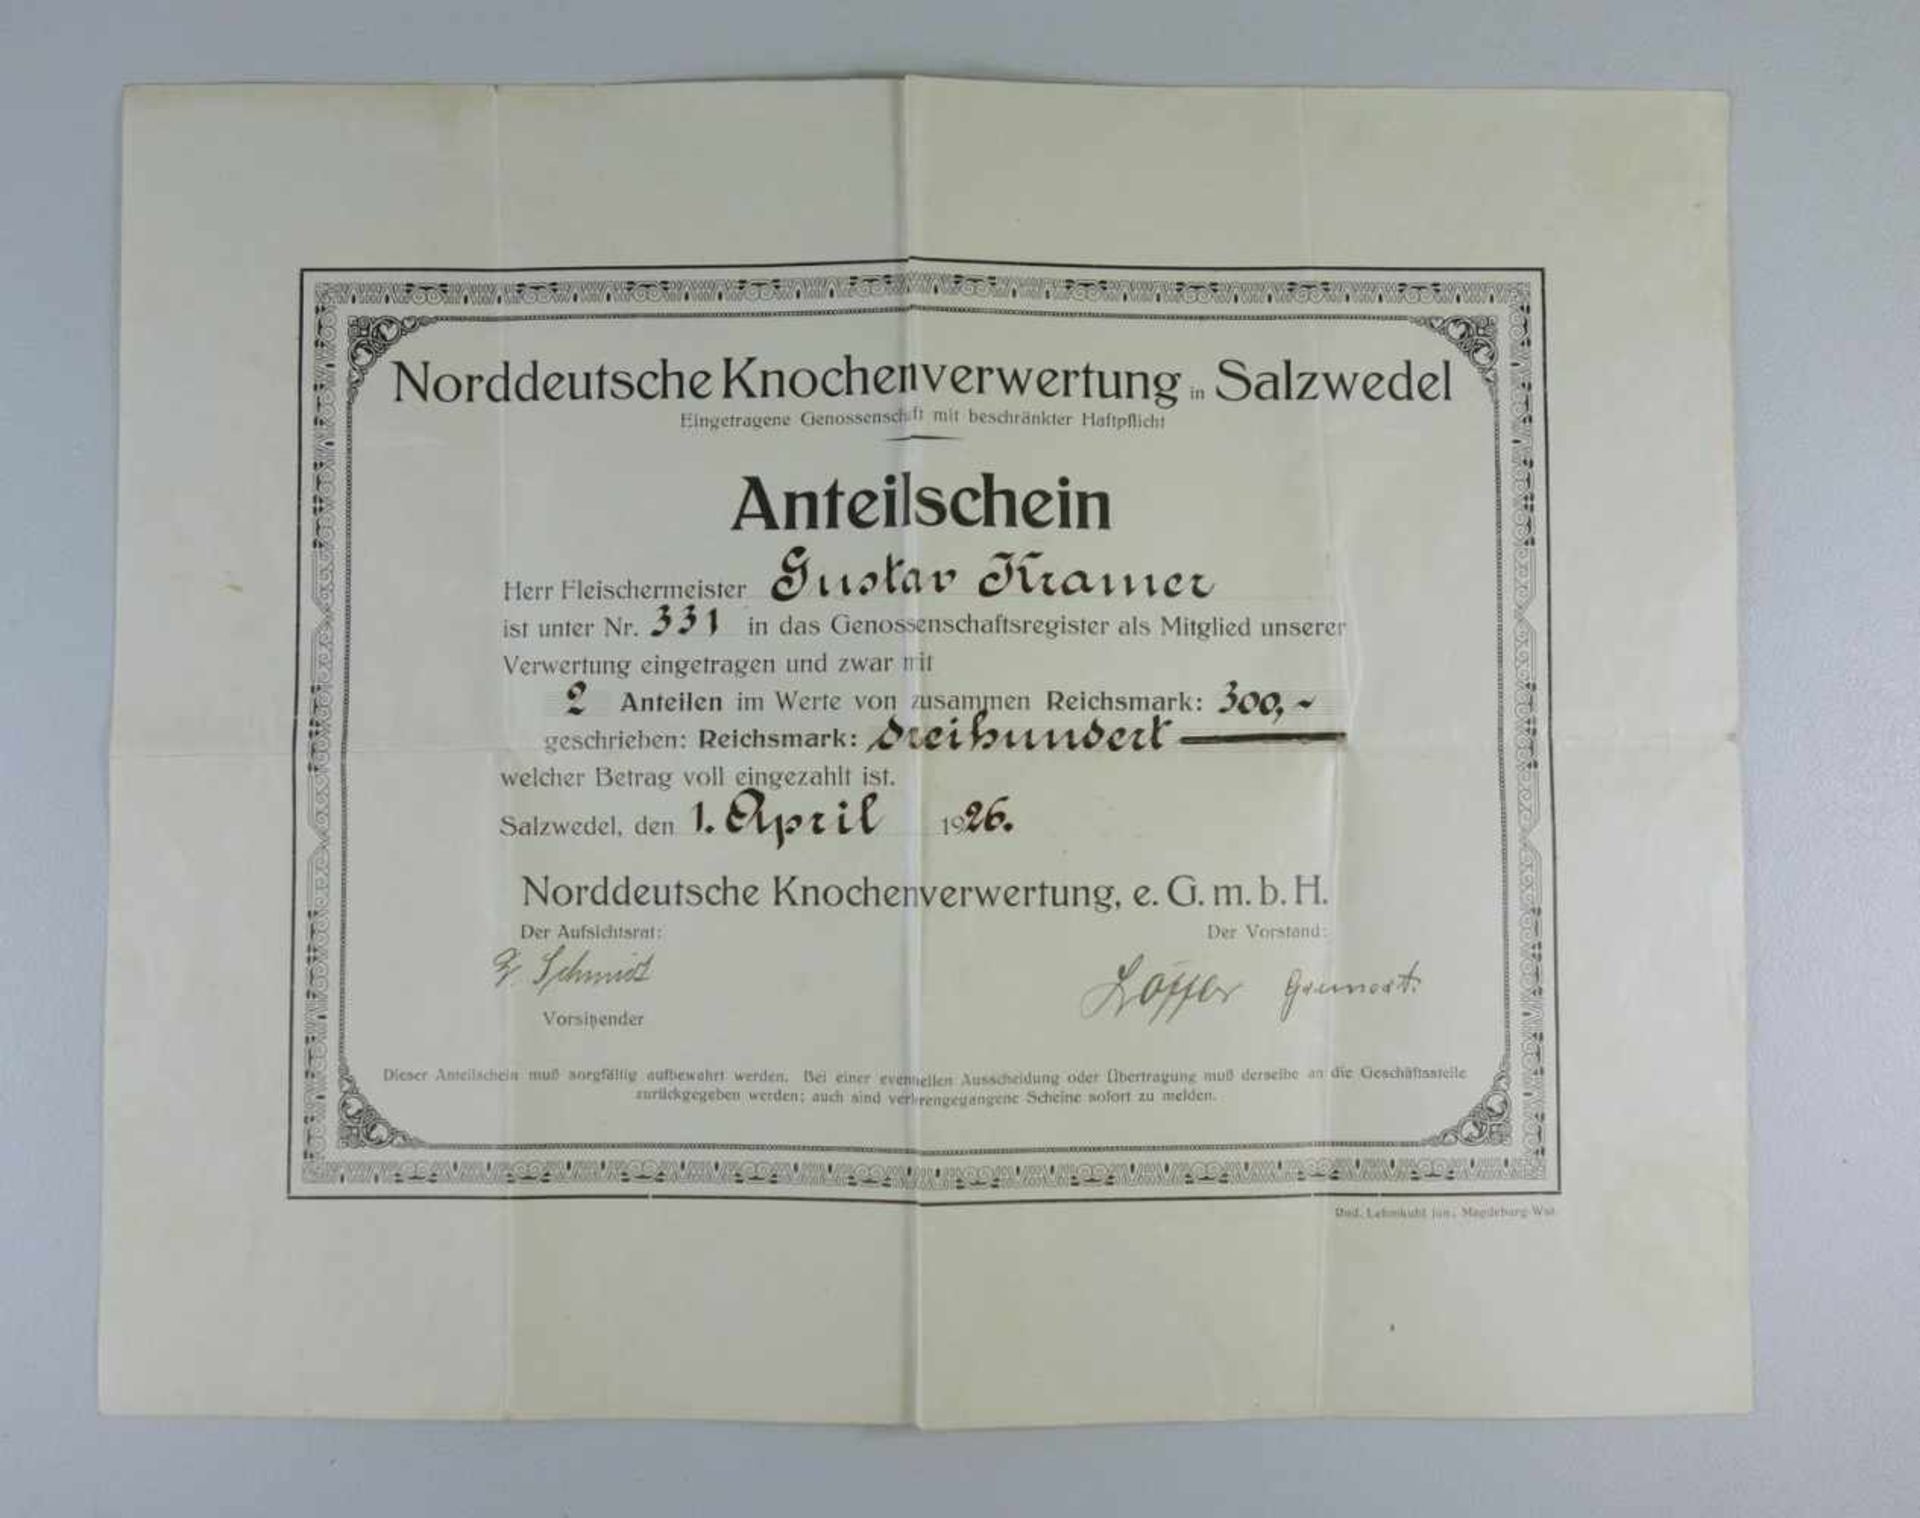 Anteilschein "Norddeutsche Knochenverwertung in Salzwedel", 1926Fleischermeister Gustav Kramer,